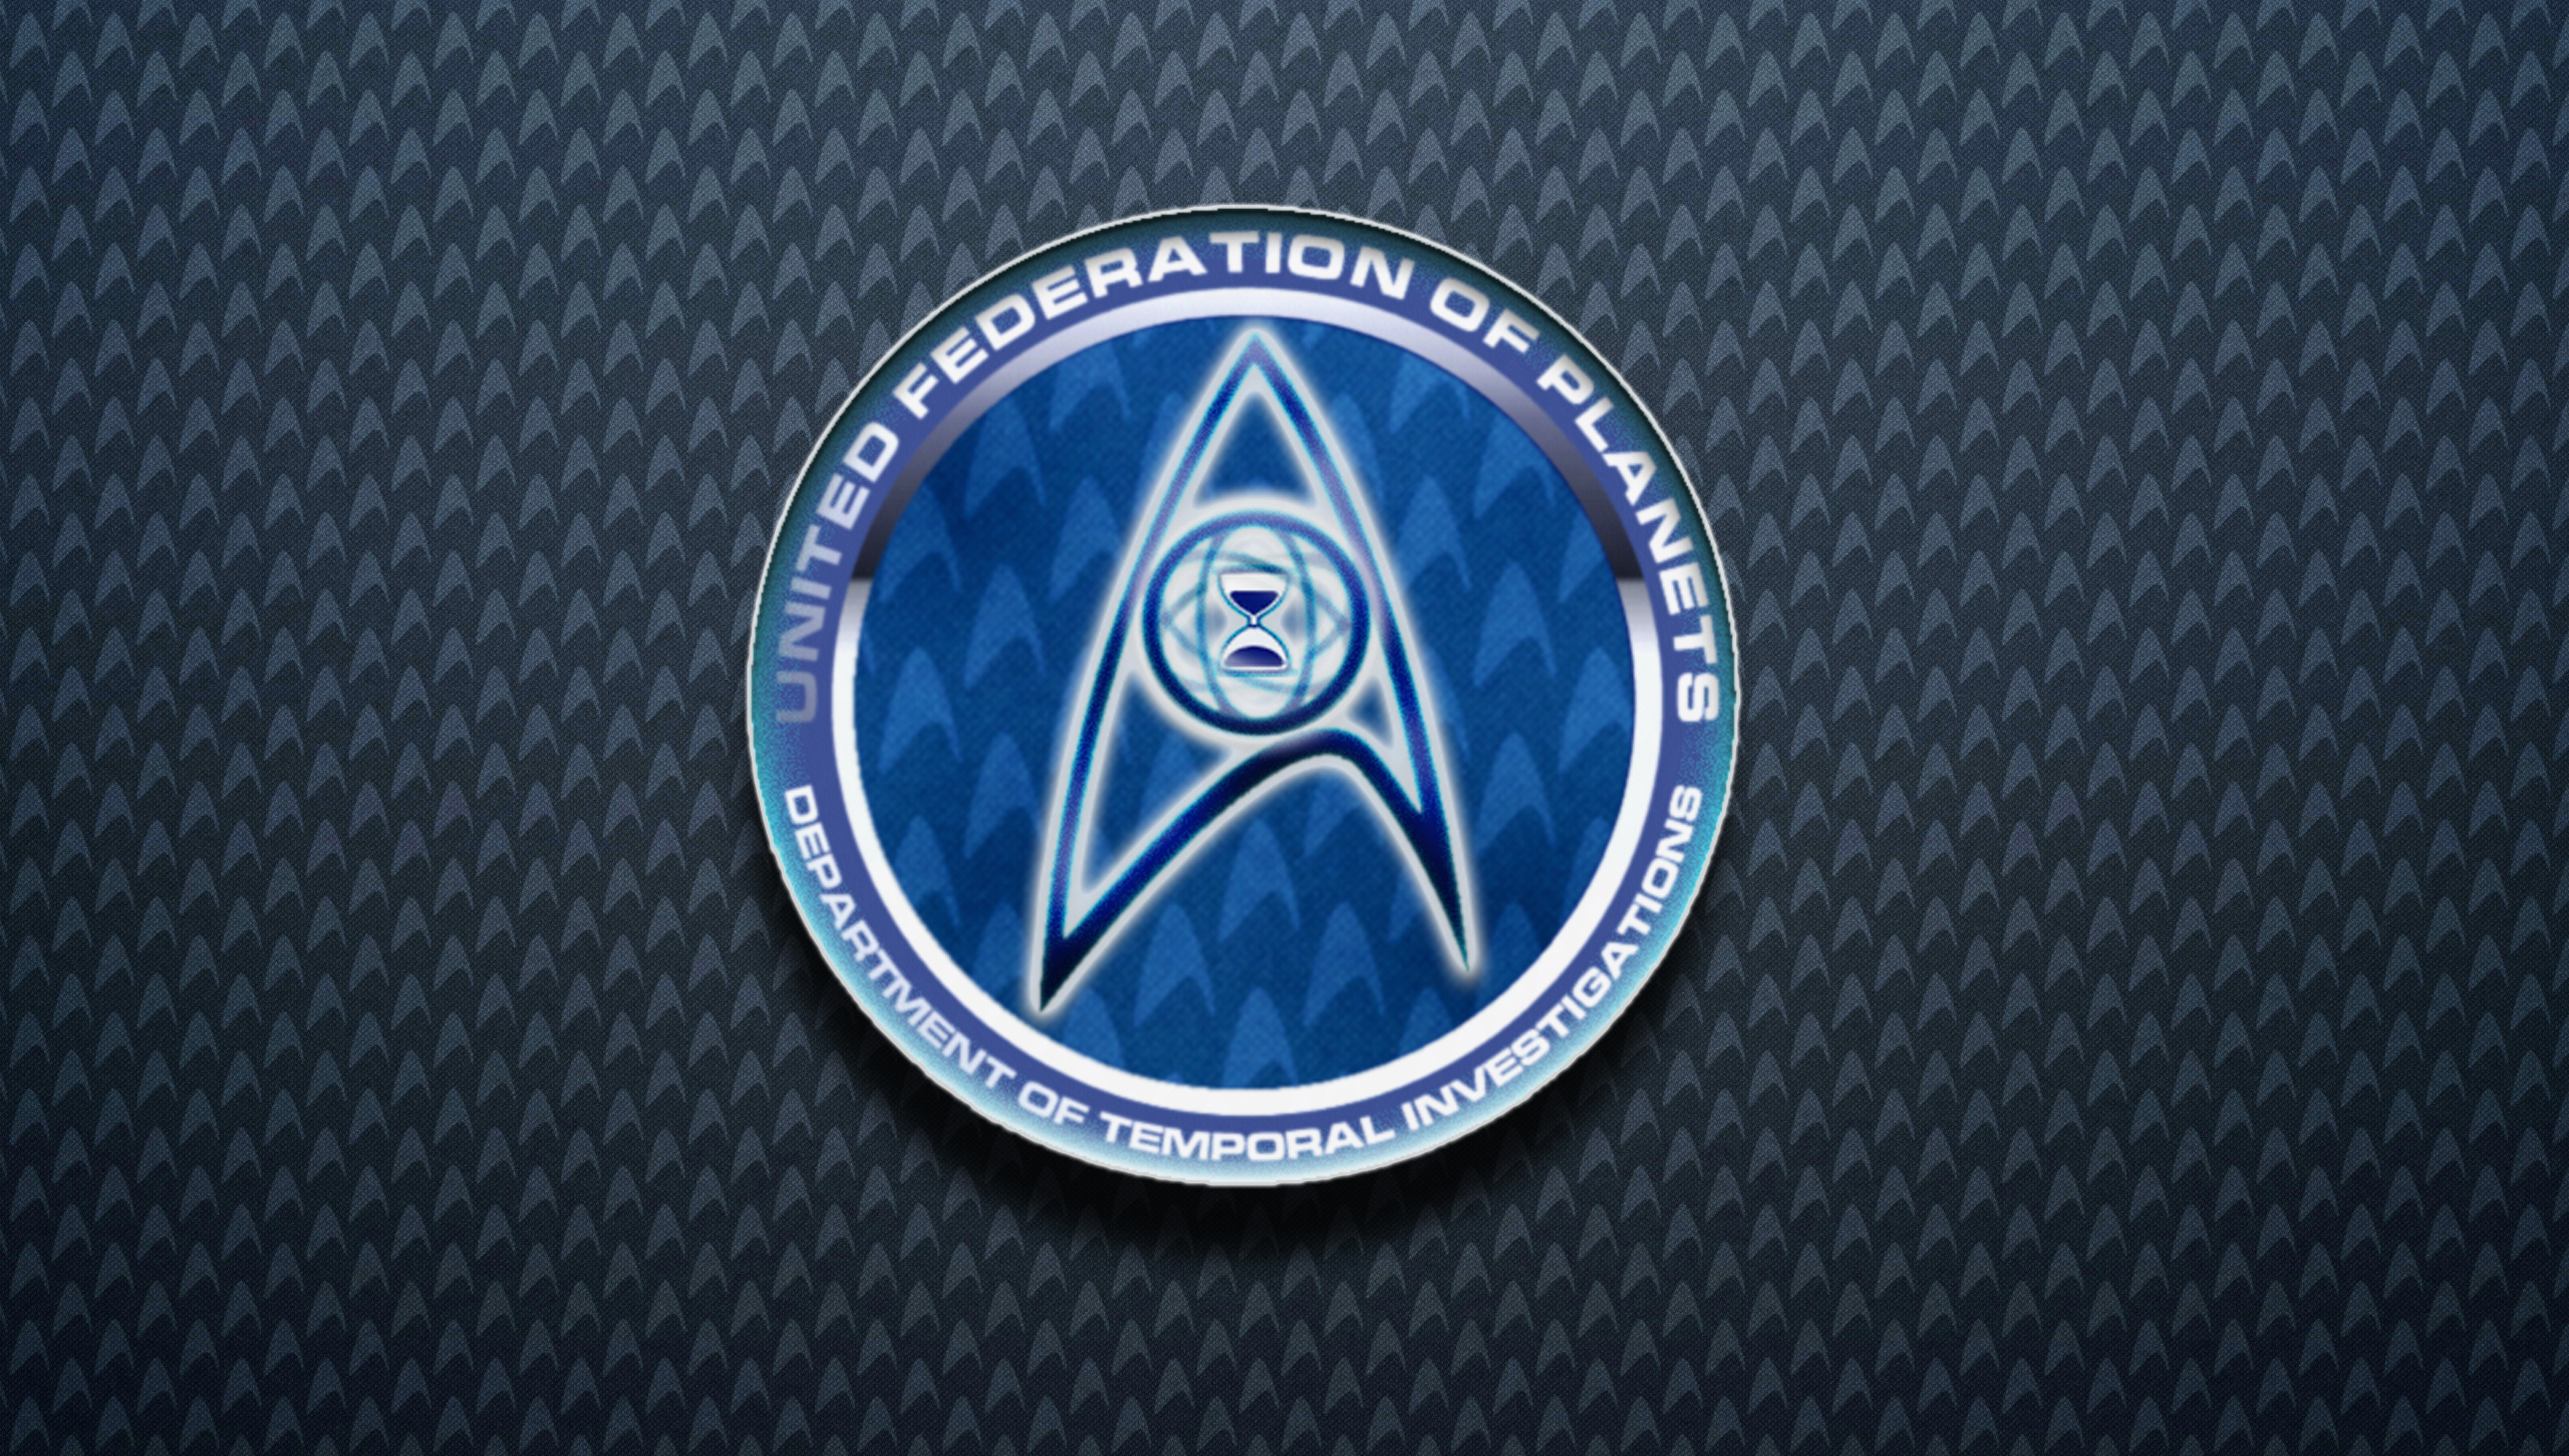 Star Trek DTI Logo Wallpaper by DJBStudios on